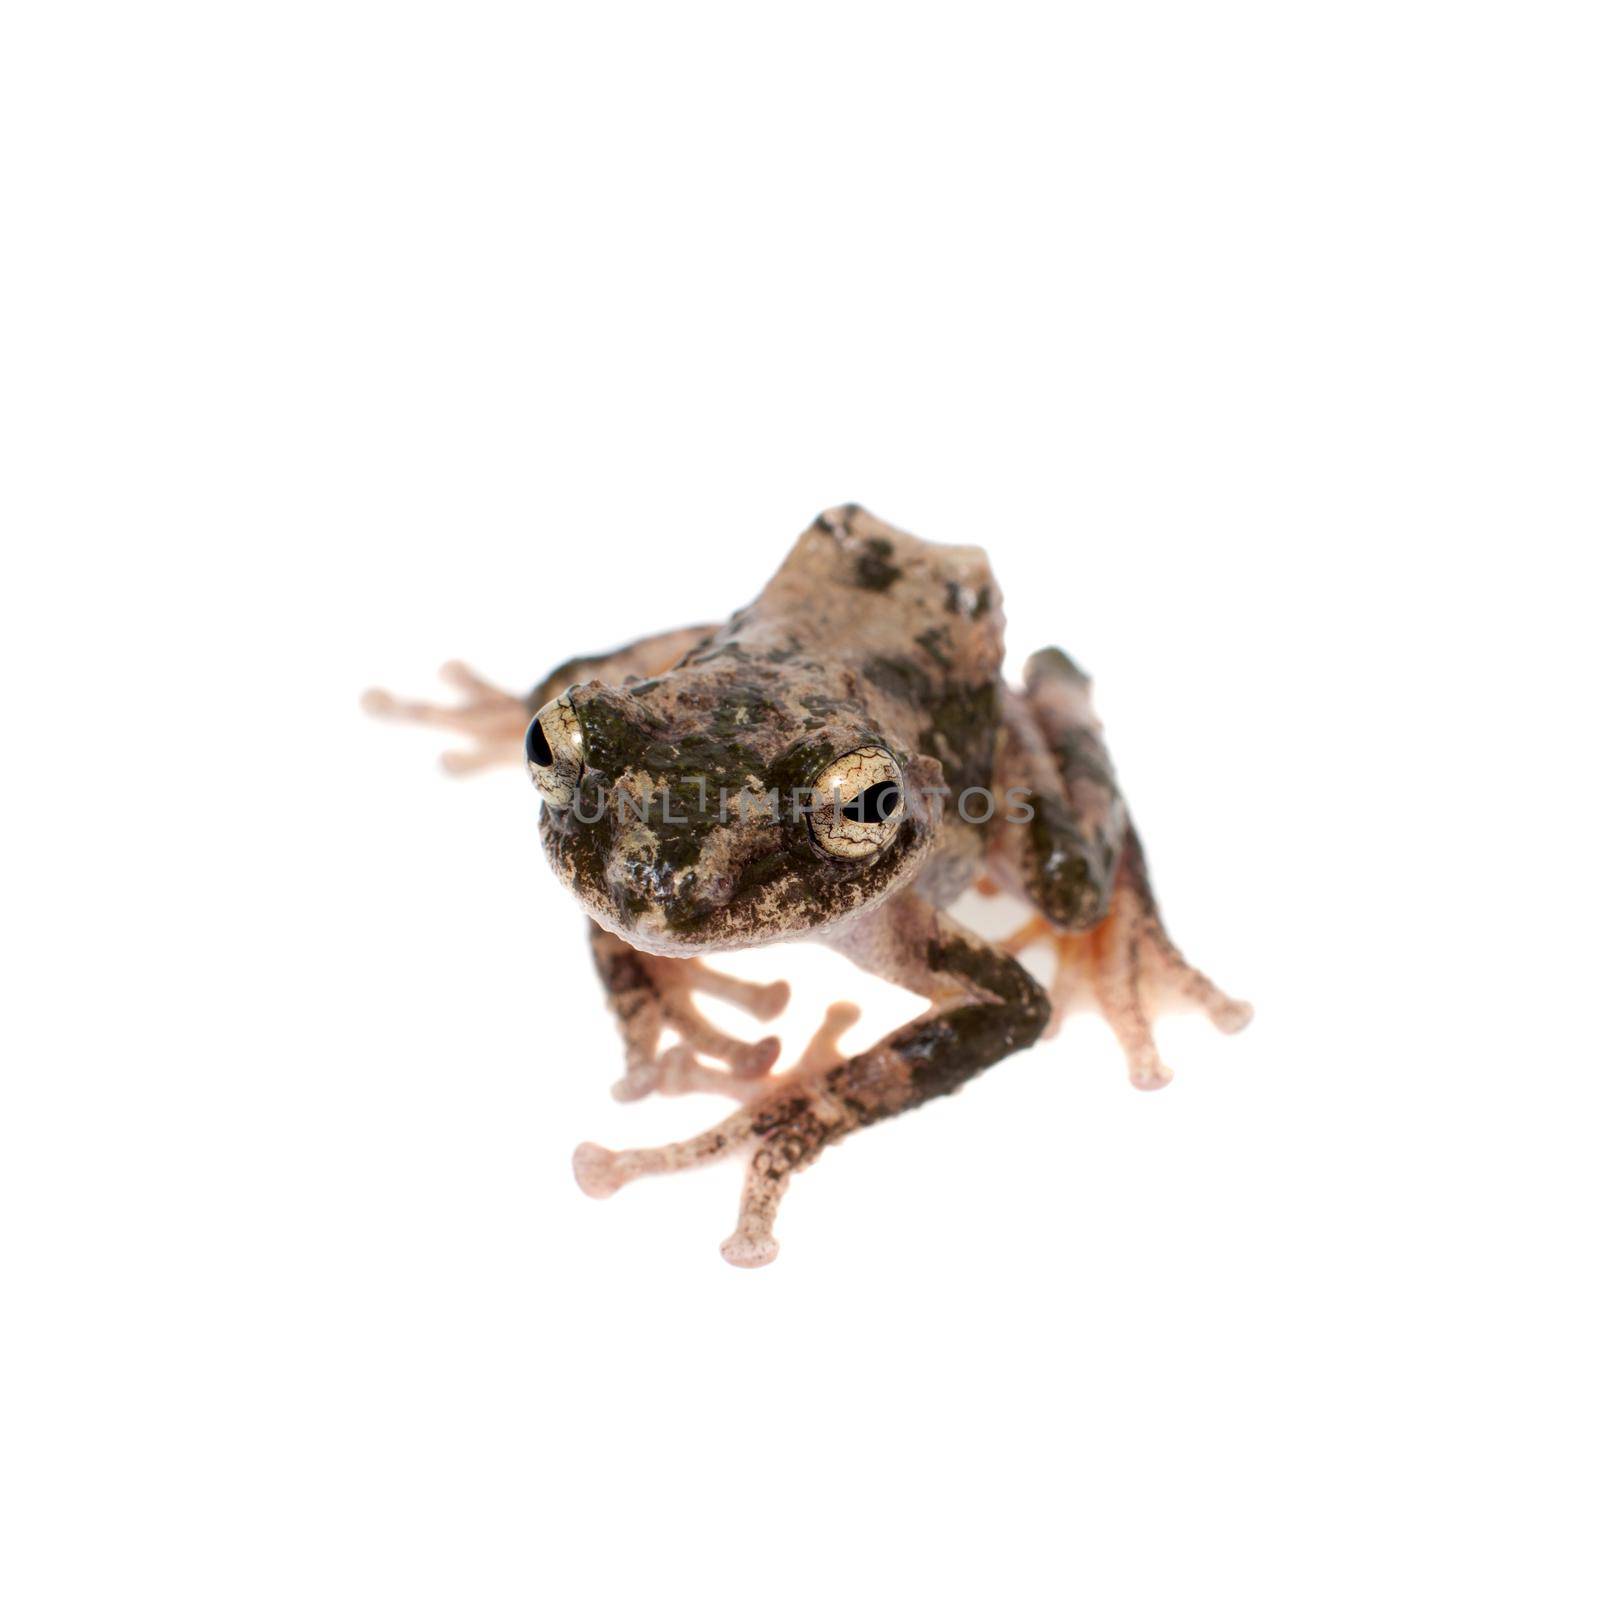 serrate-legged small treefrog, Kurixalus odontotarsus, isolated on white background